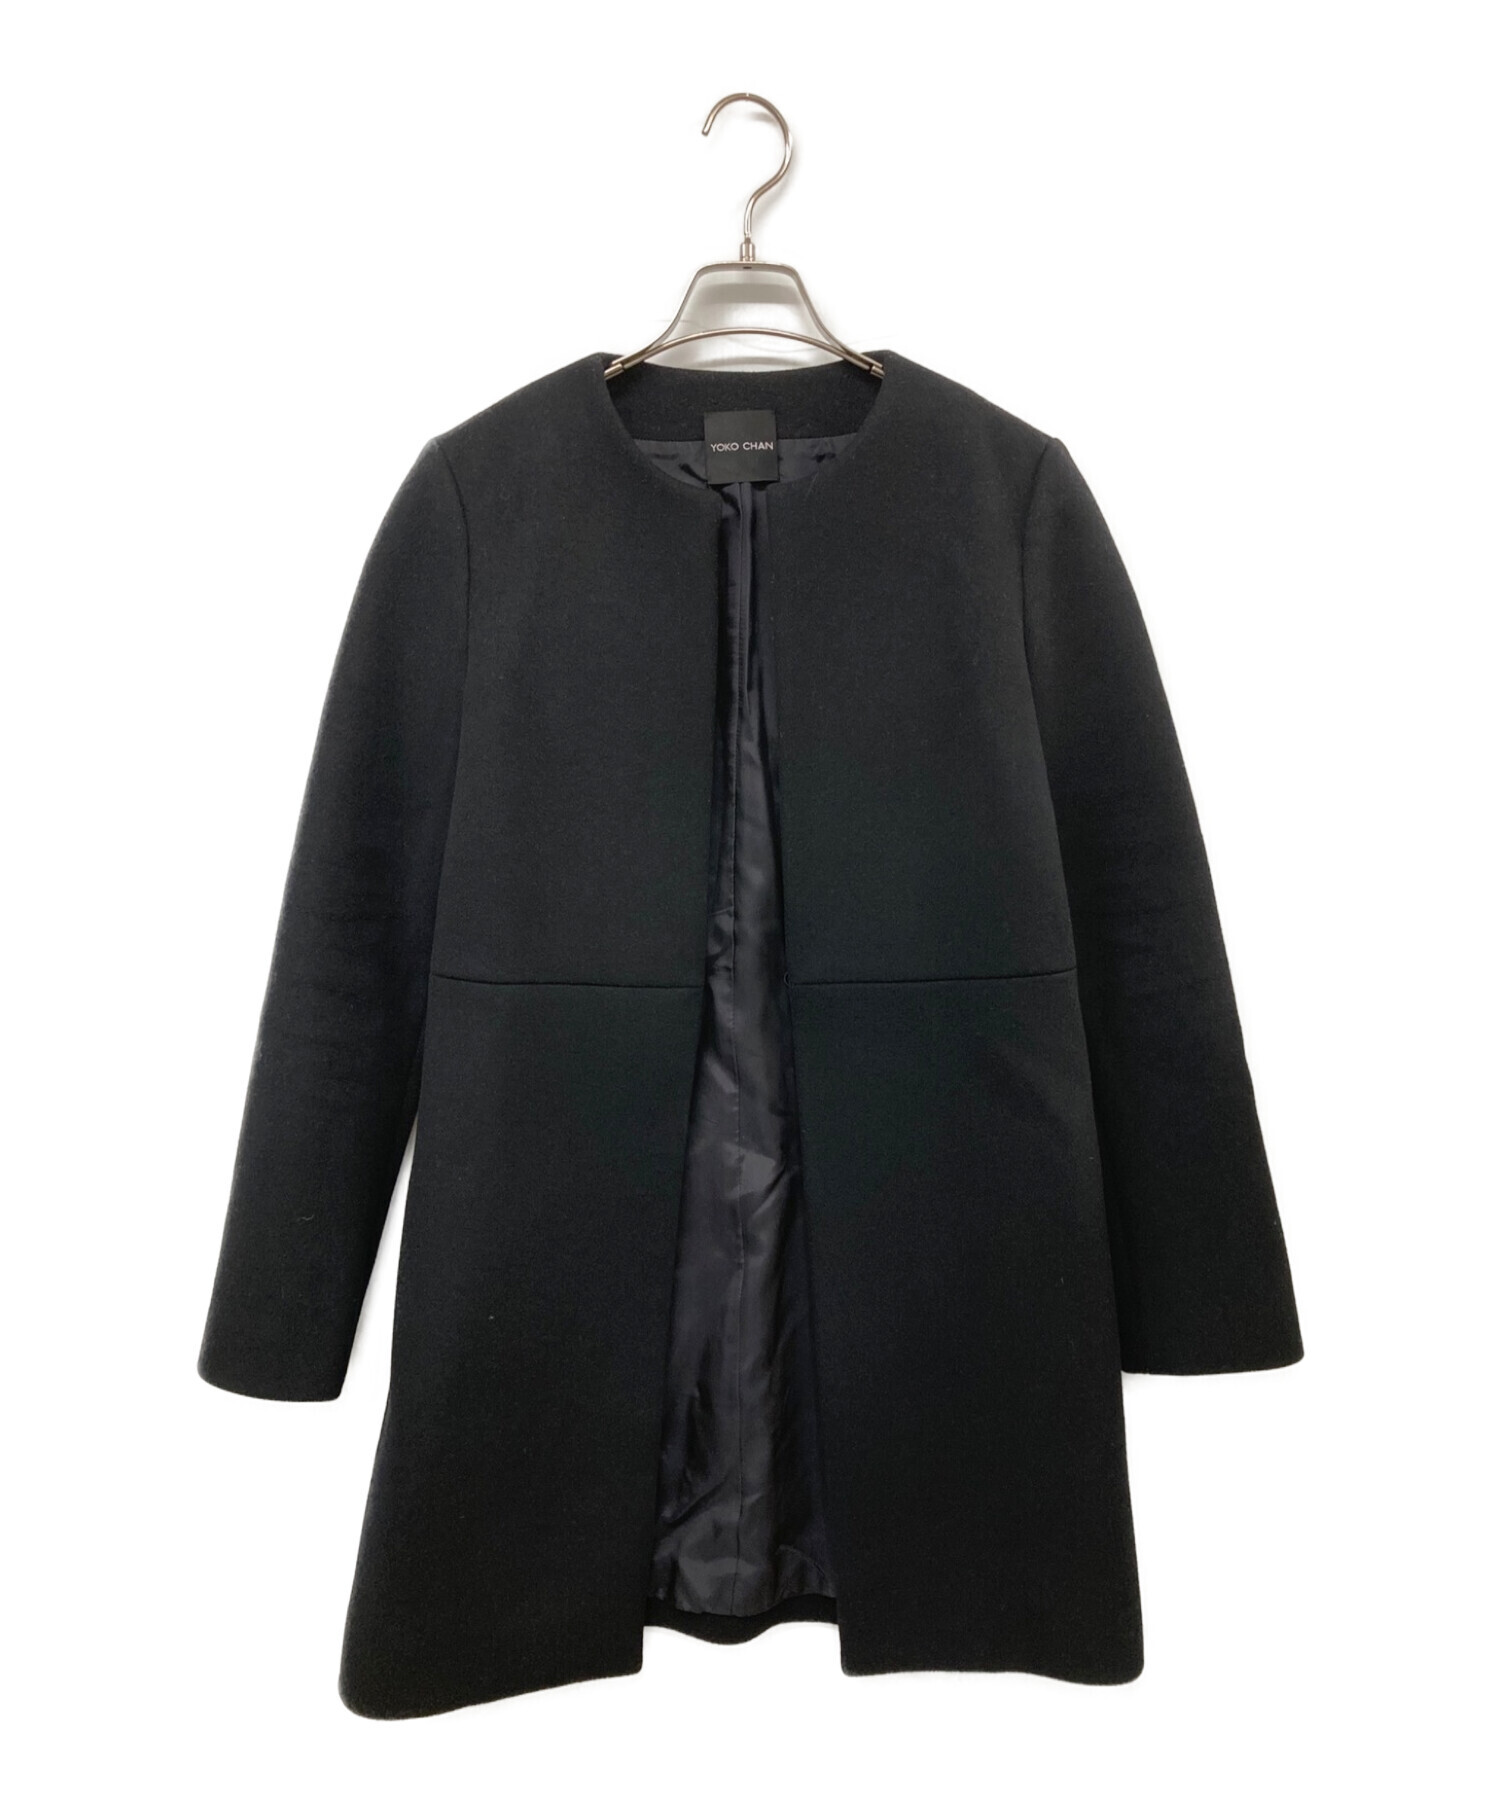 ヨーコチャンのブラックコート袖丈62cm